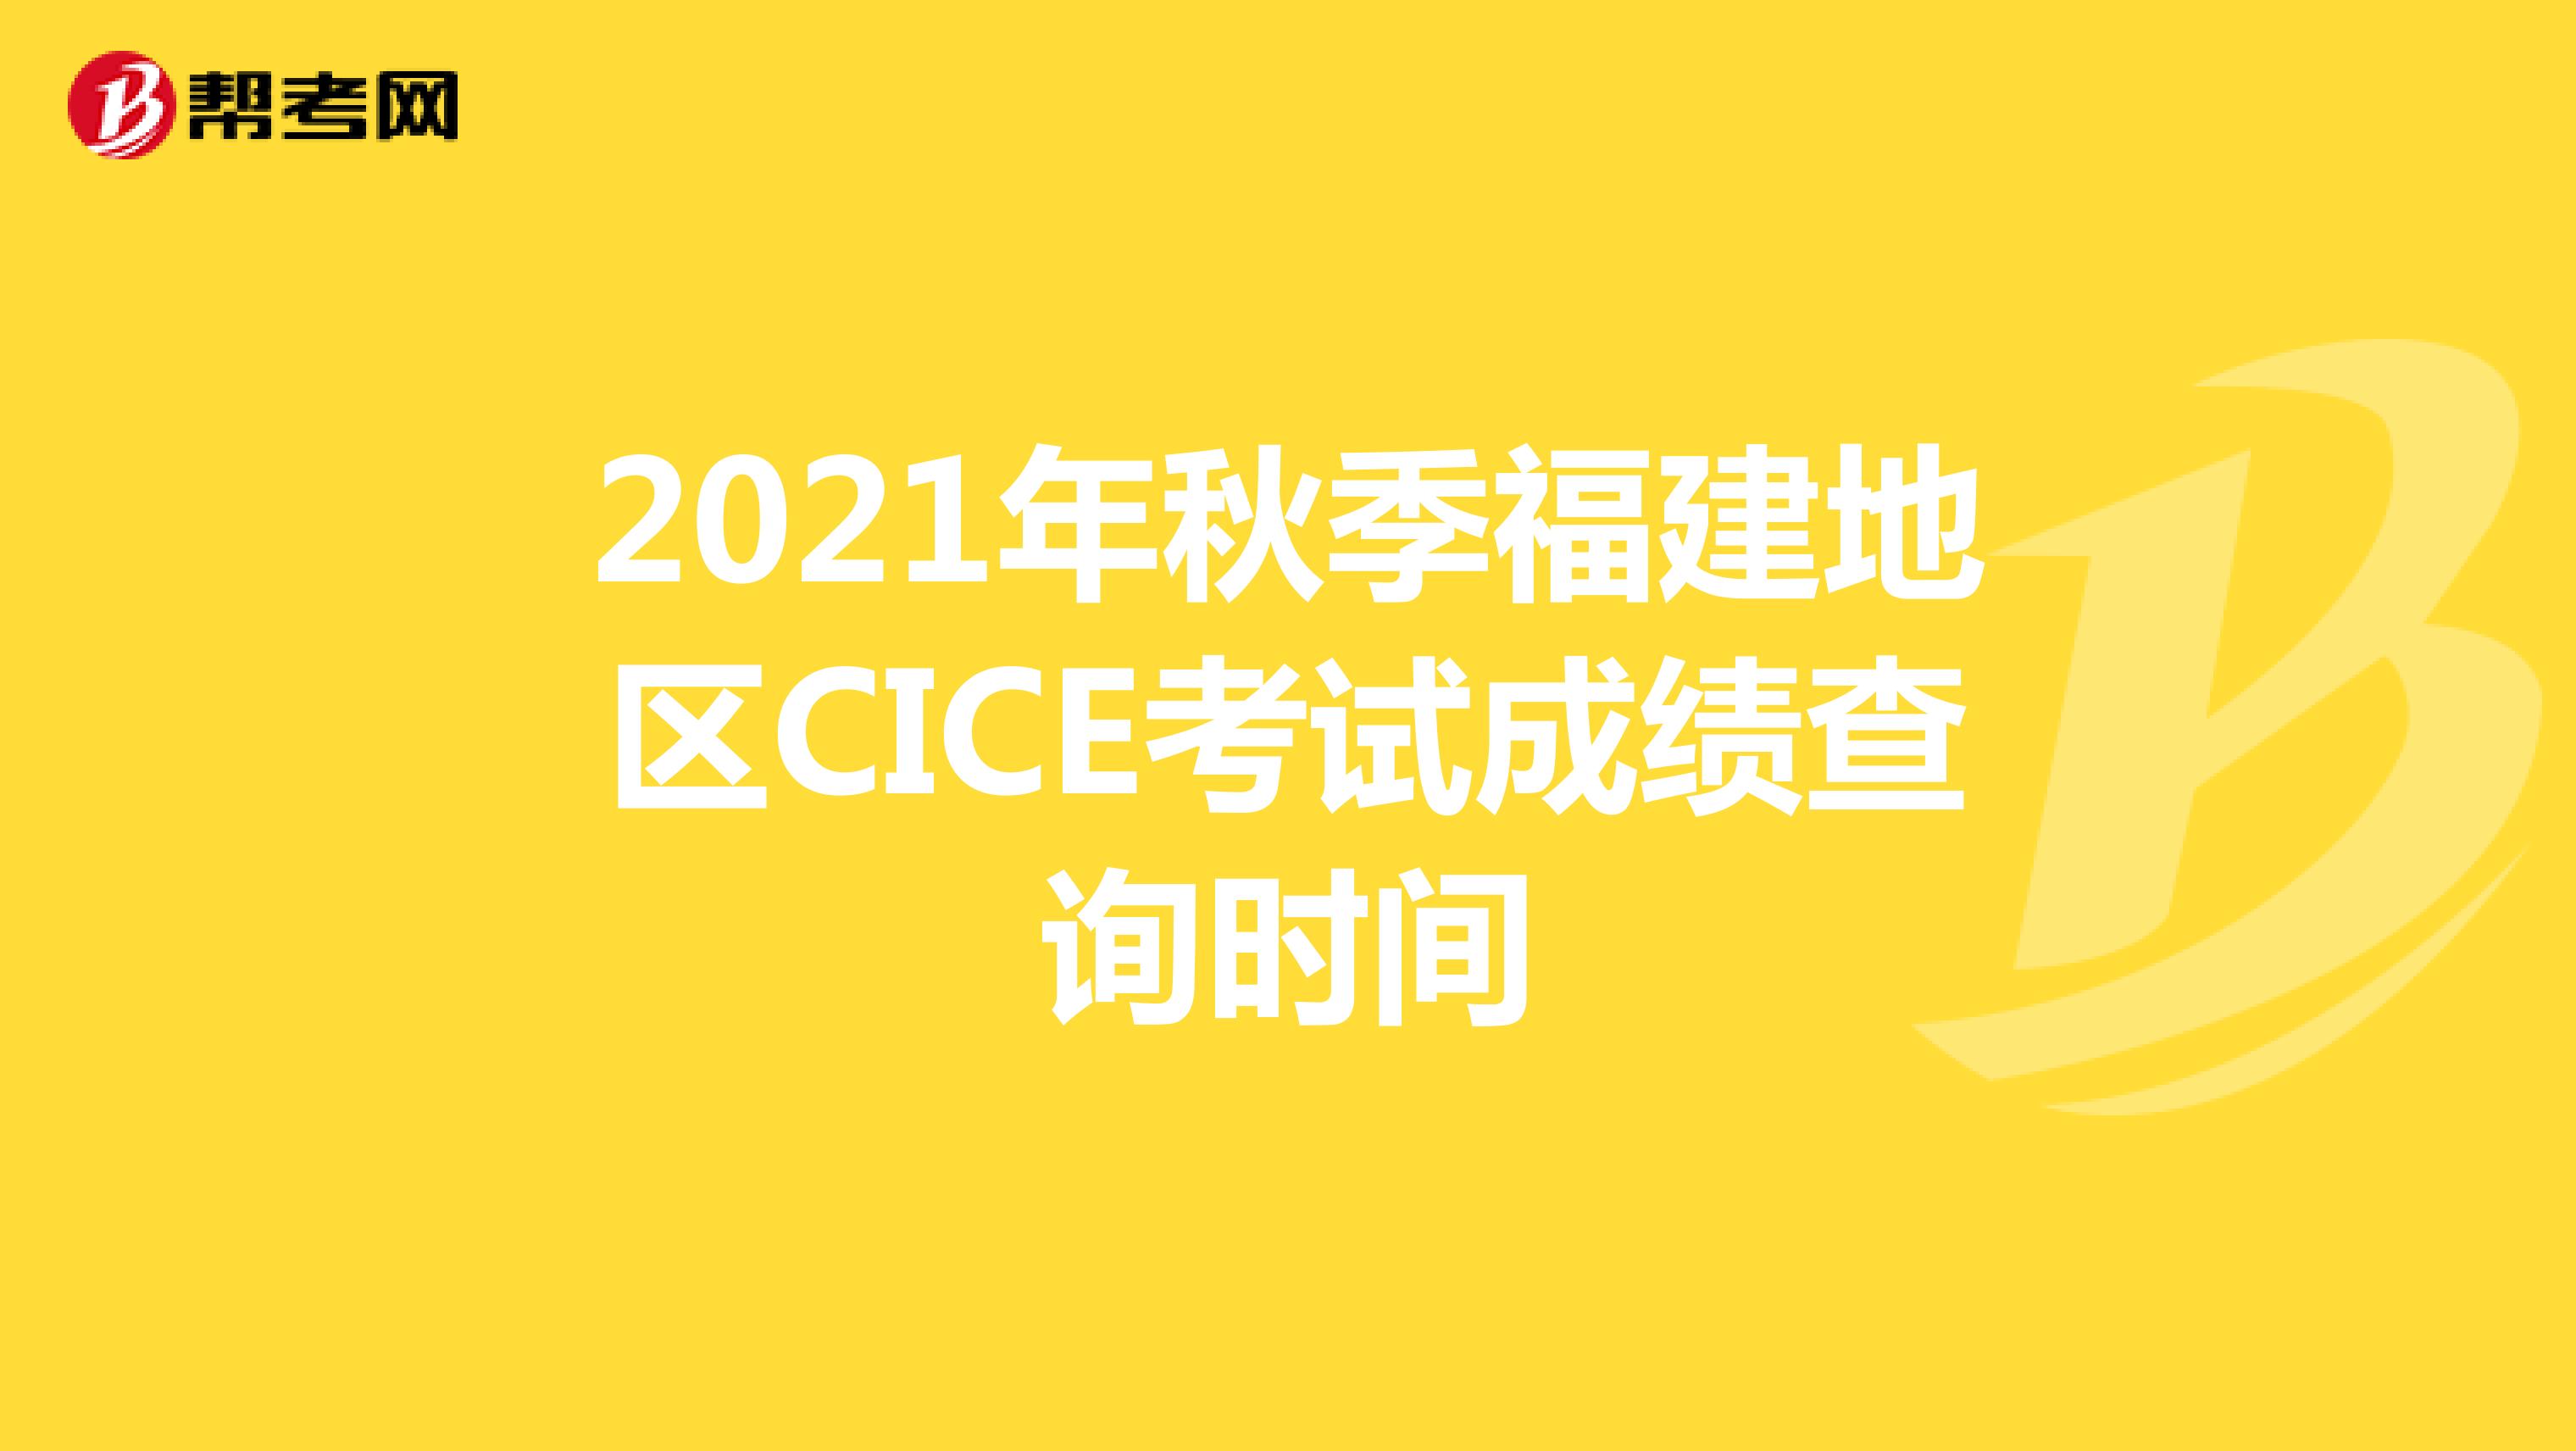 2021年秋季福建地区CICE考试成绩查询时间